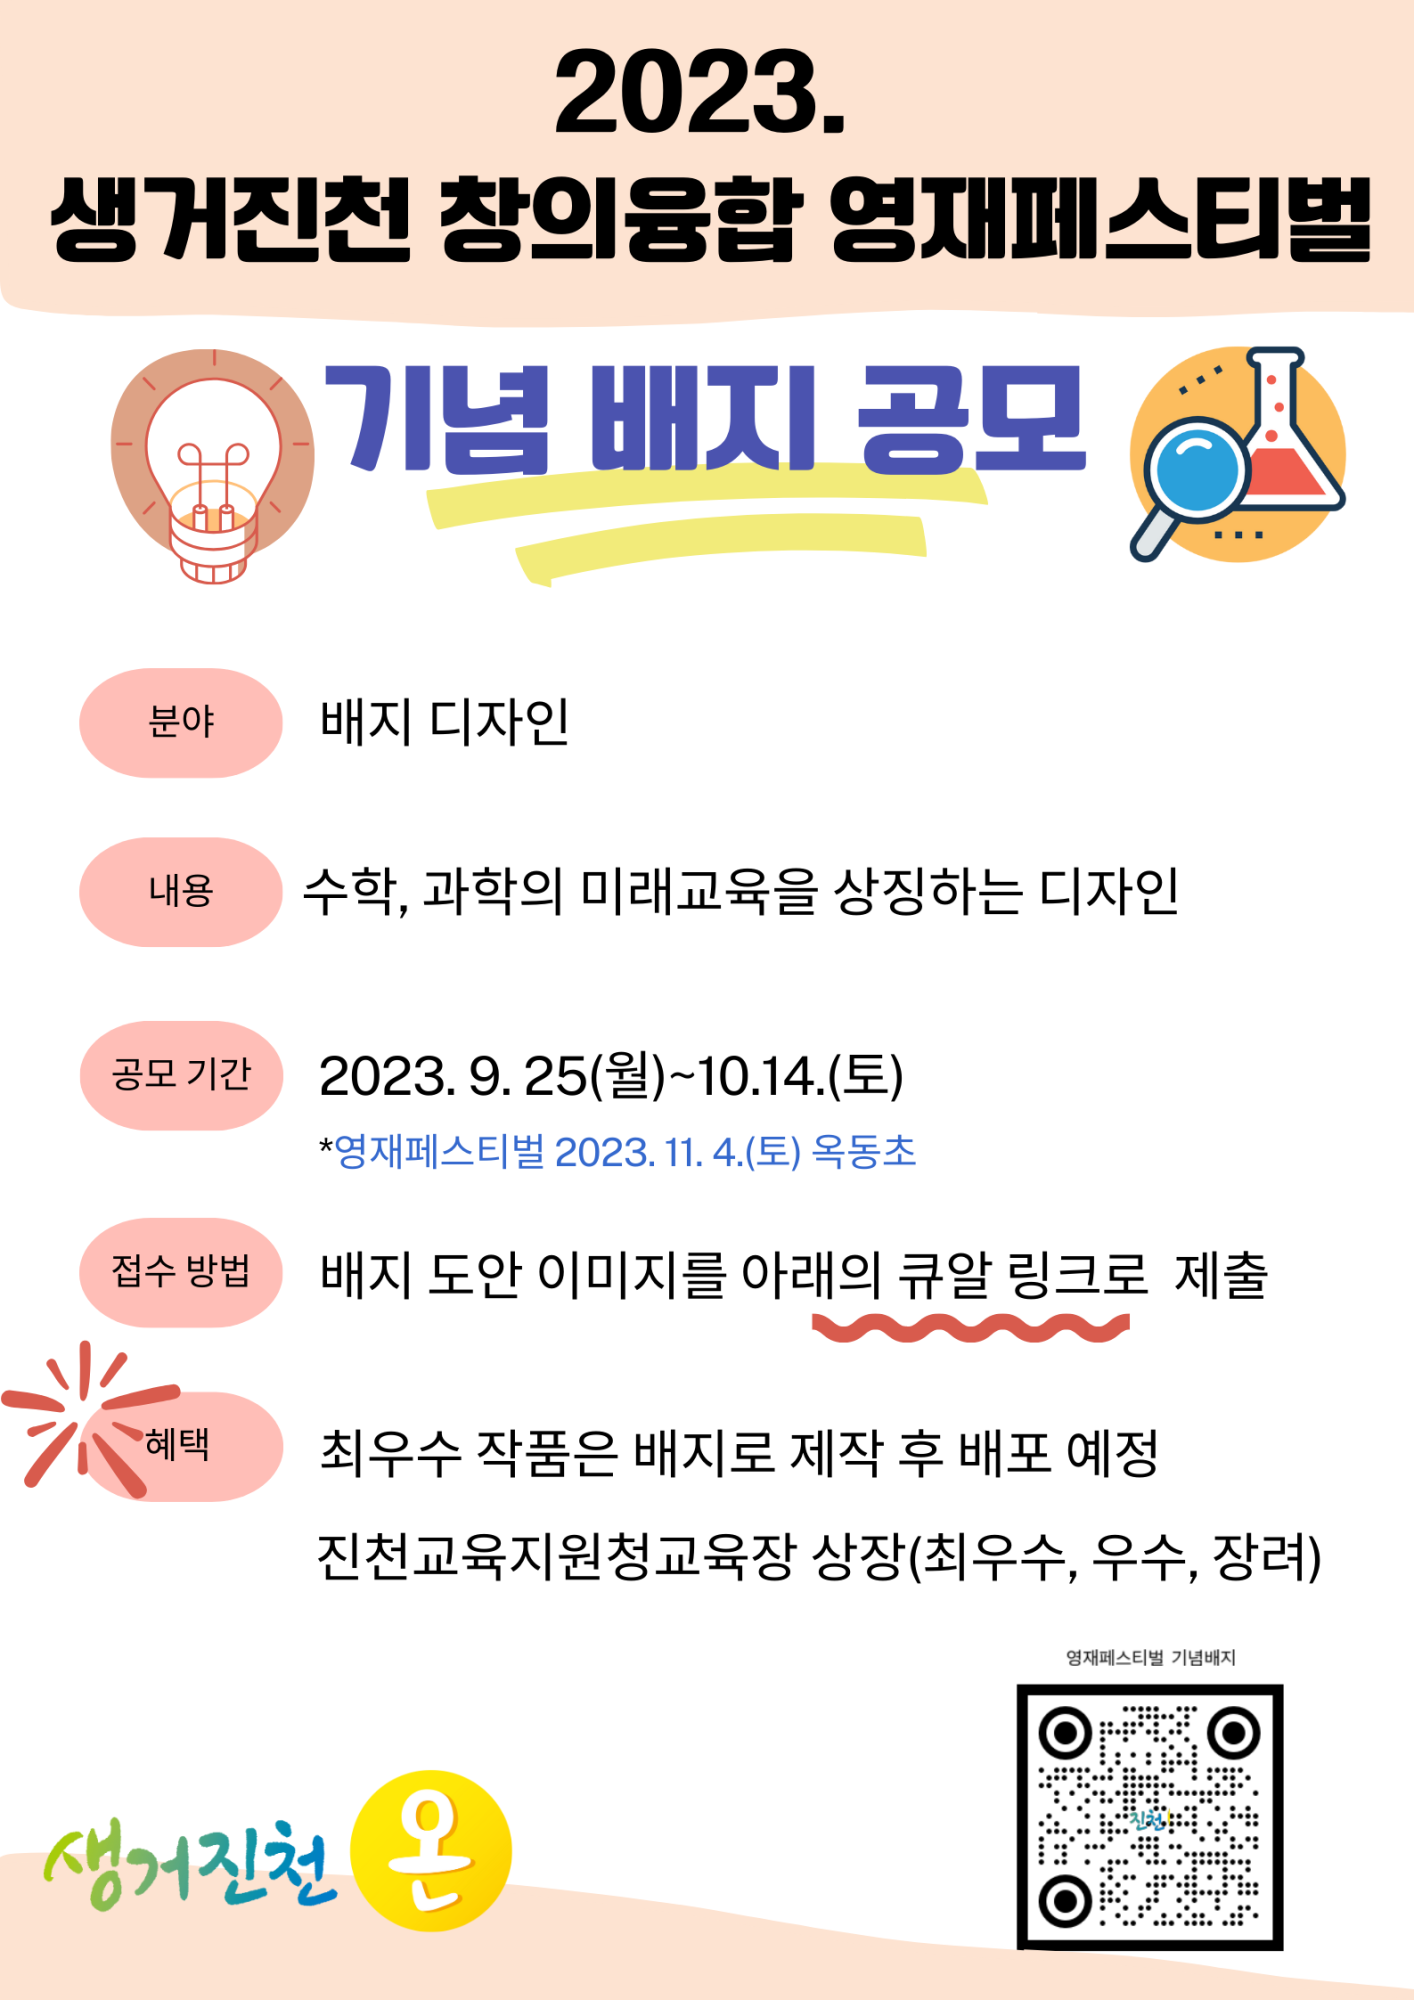 사본 -2023. 생거진천 창의융합 영재페스티벌 기념 배너 공모 안내문(홍보용)